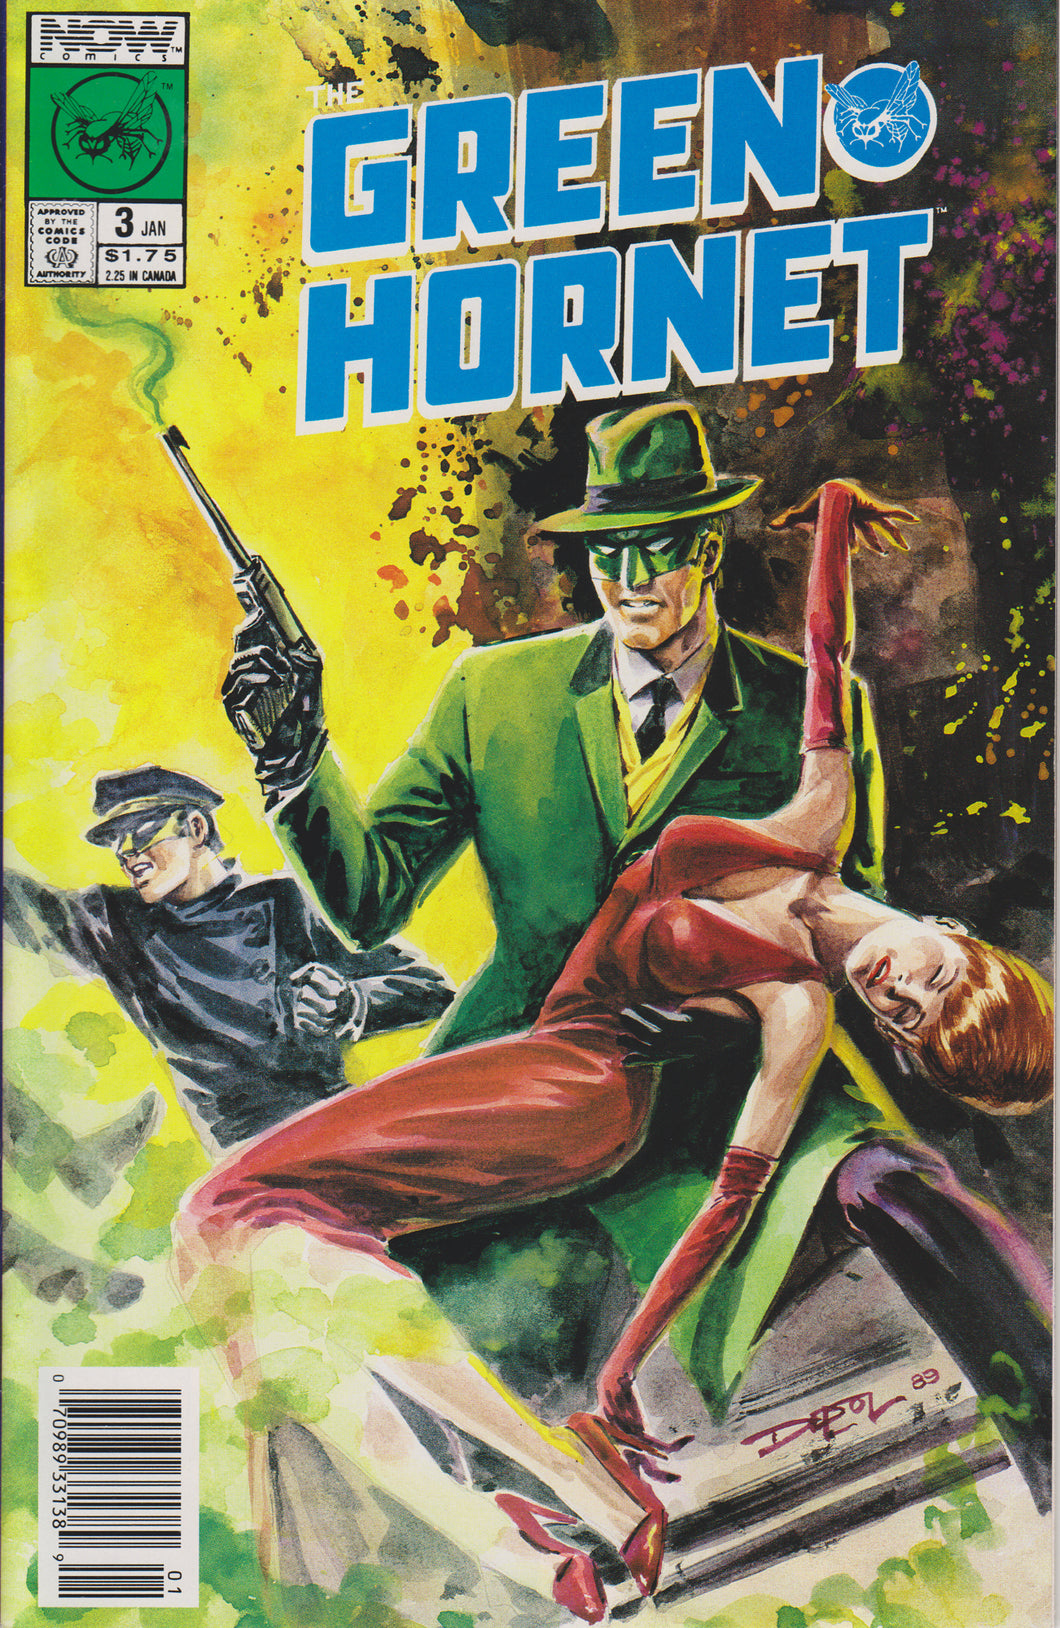 GREEN HORNET #3 COMIC BOOK ~ Now Comics